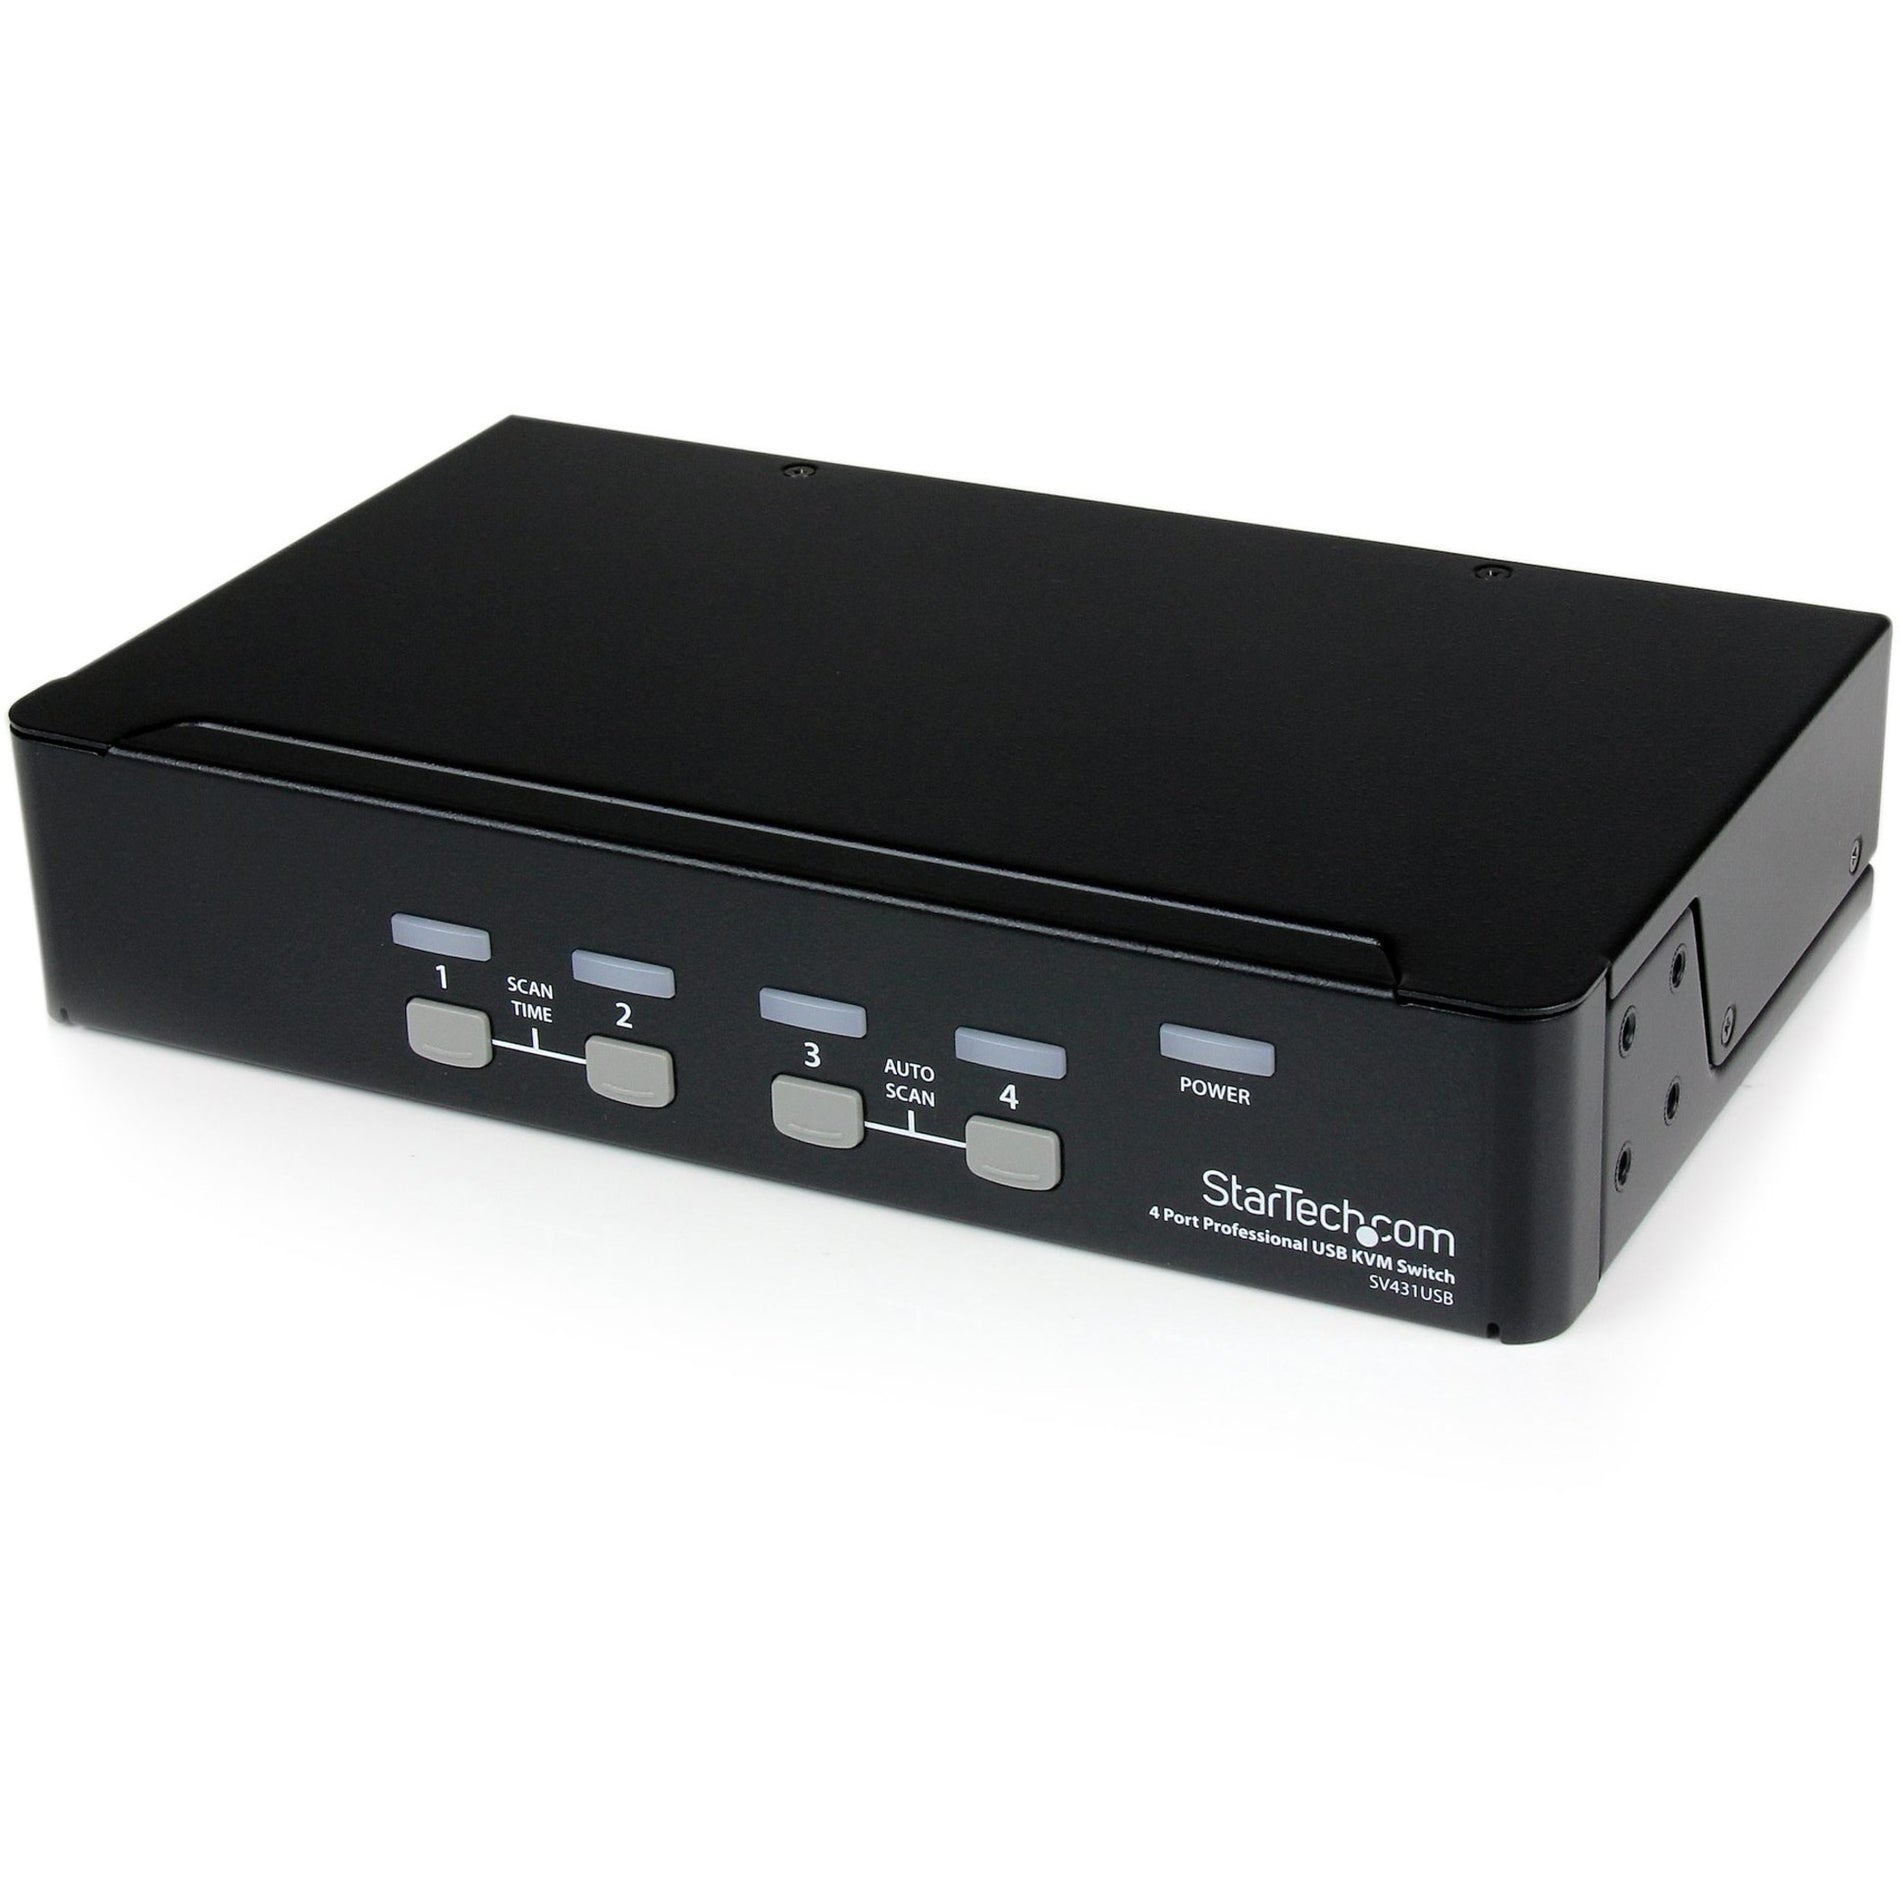 StarTech.com SV431USB 4 Port Professional VGA USB KVM Switch with Hub, Plug and Play, USB 2.0 Hub, Rack-Mountable